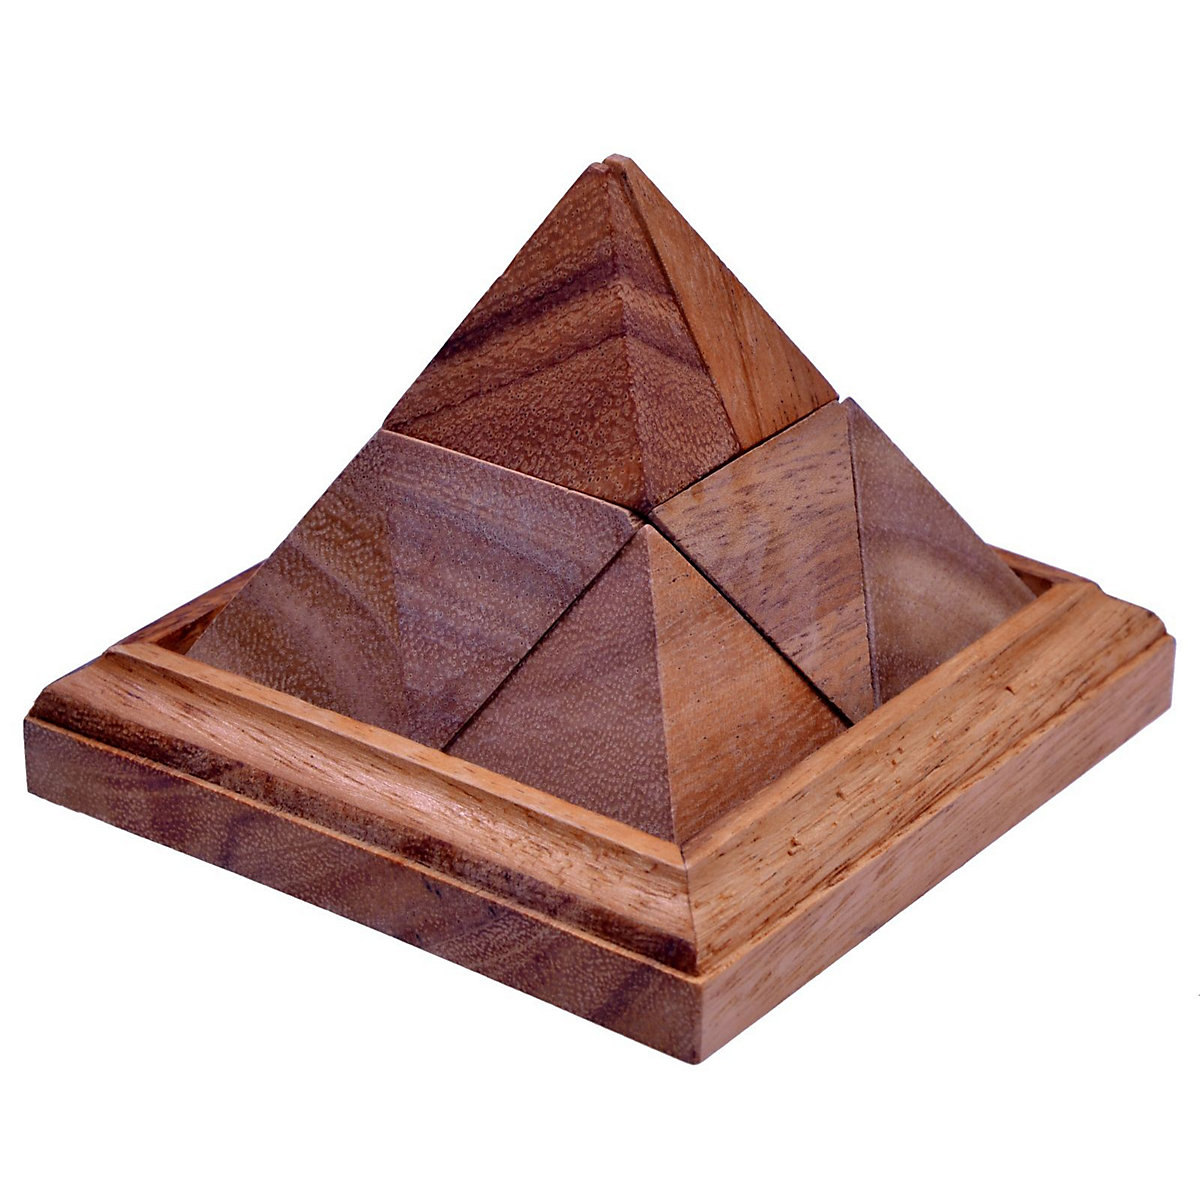 LOGOPLAY Spitze Pyramide 3D Puzzle Knobelspiel auf einem Holzrahmen